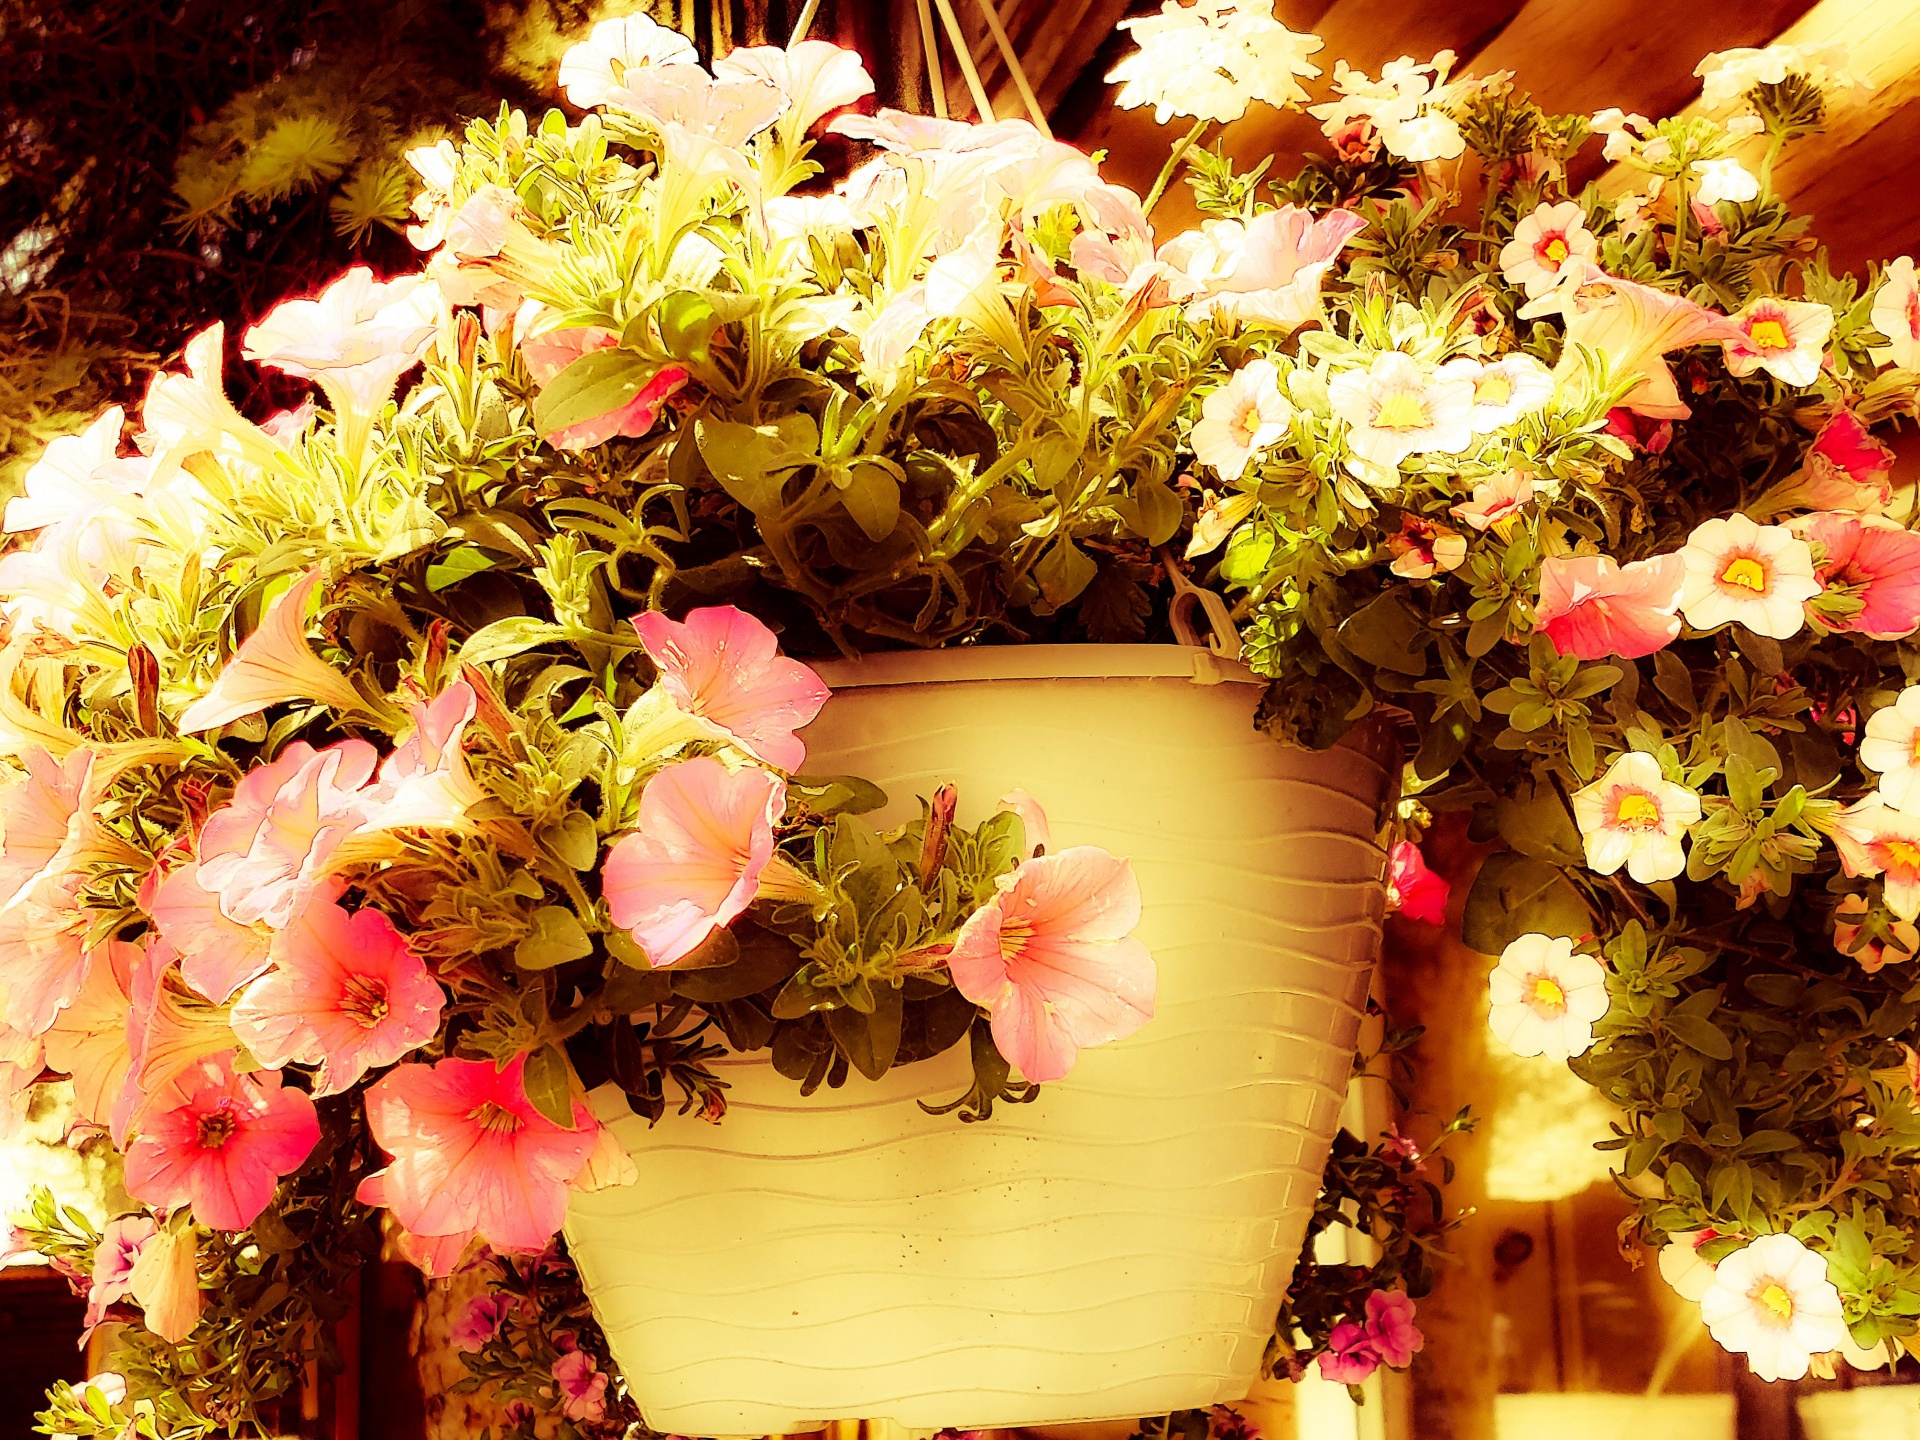 Hanging Flower Basket